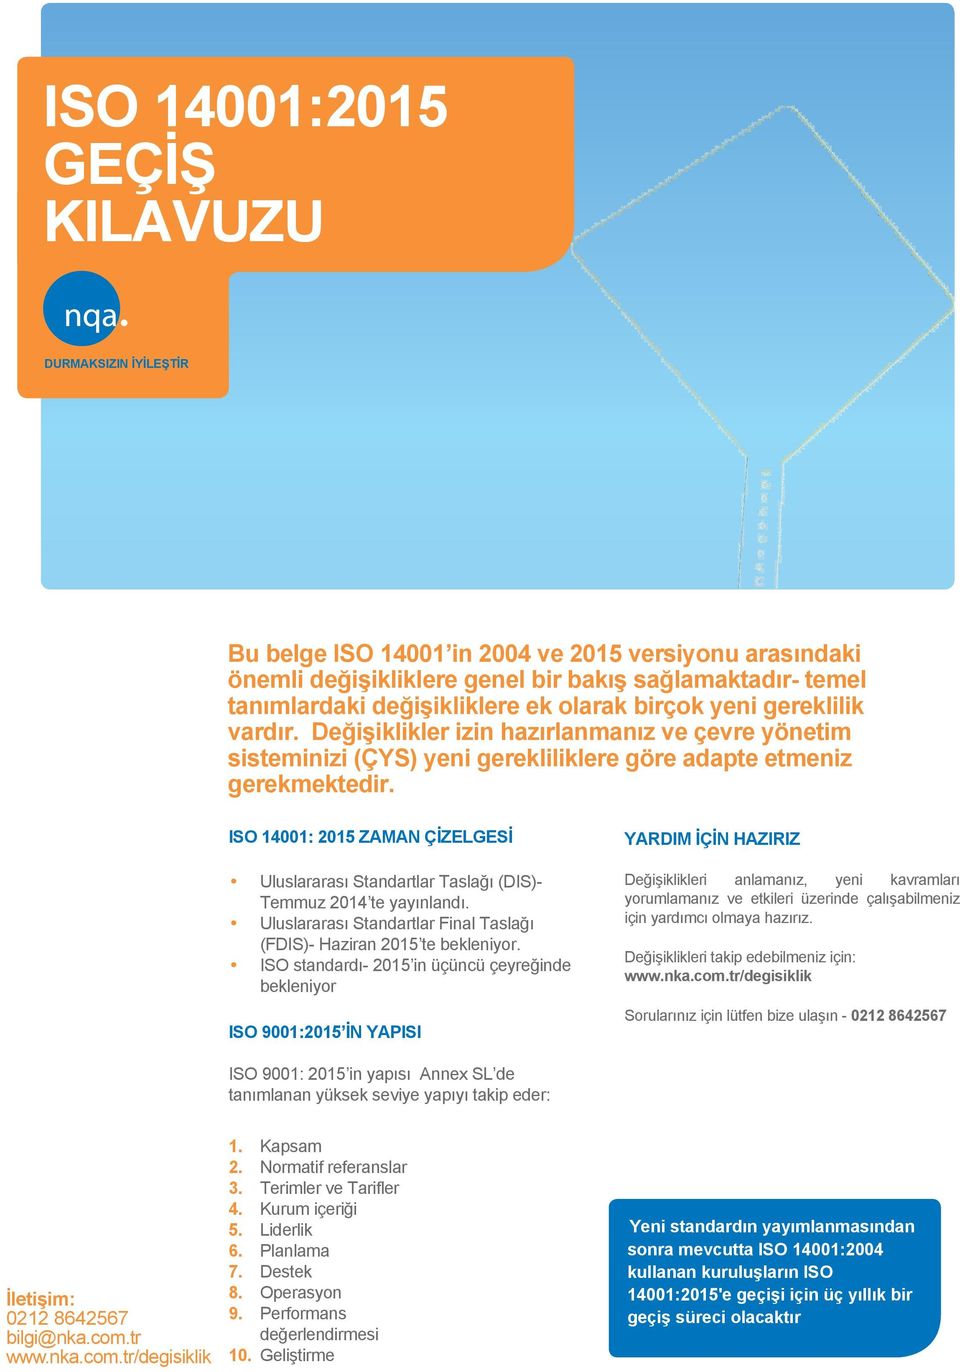 ISO 14001: 2015 ZAMAN ÇİZELGESİ Uluslararası Standartlar Taslağı (DIS)- Temmuz 2014 te yayınlandı. Uluslararası Standartlar Final Taslağı (FDIS)- Haziran 2015 te bekleniyor.